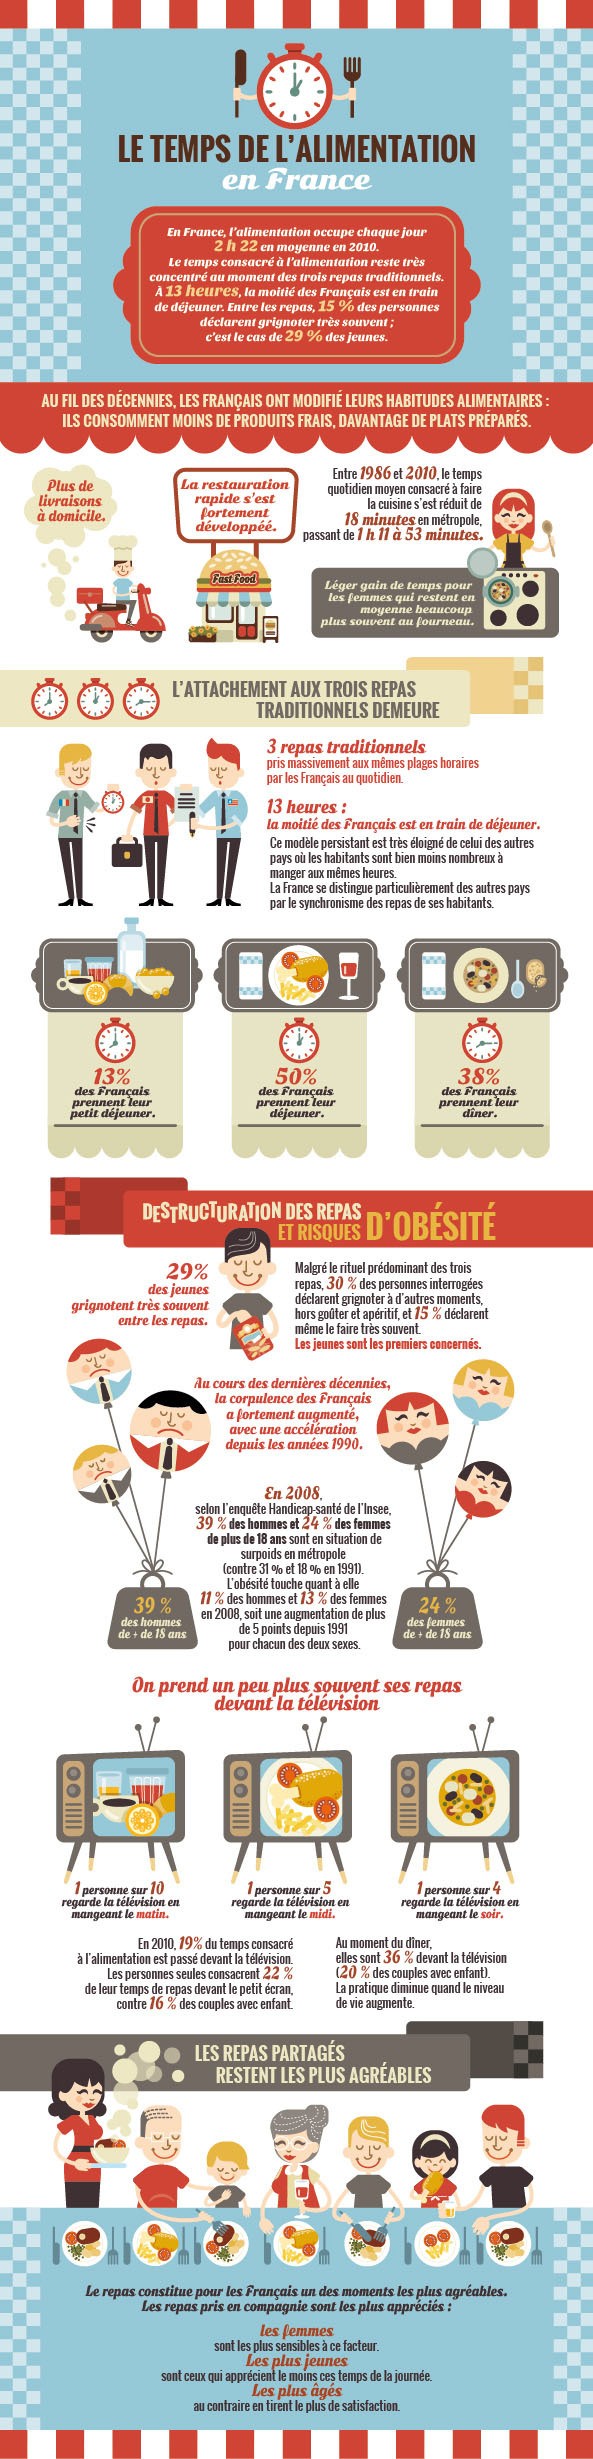 Infographie : Le temps de l'alimentation en France